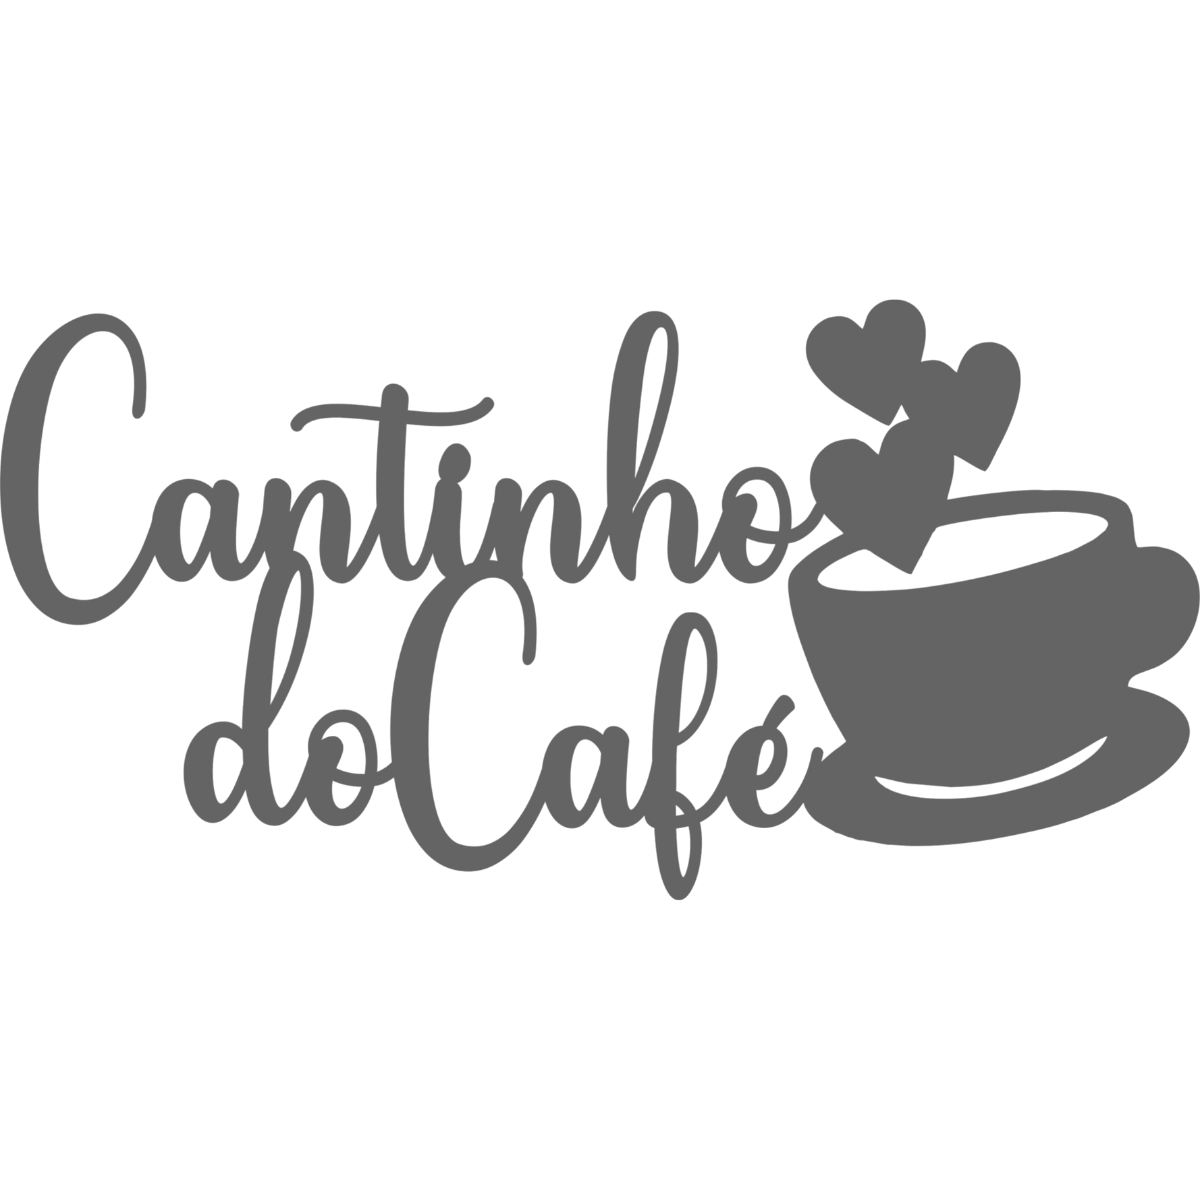 Cantinho do Cafe - Xícara - Decorativo - MDF - Preto - Plaquinha Buffet cozinha - 15x30cm